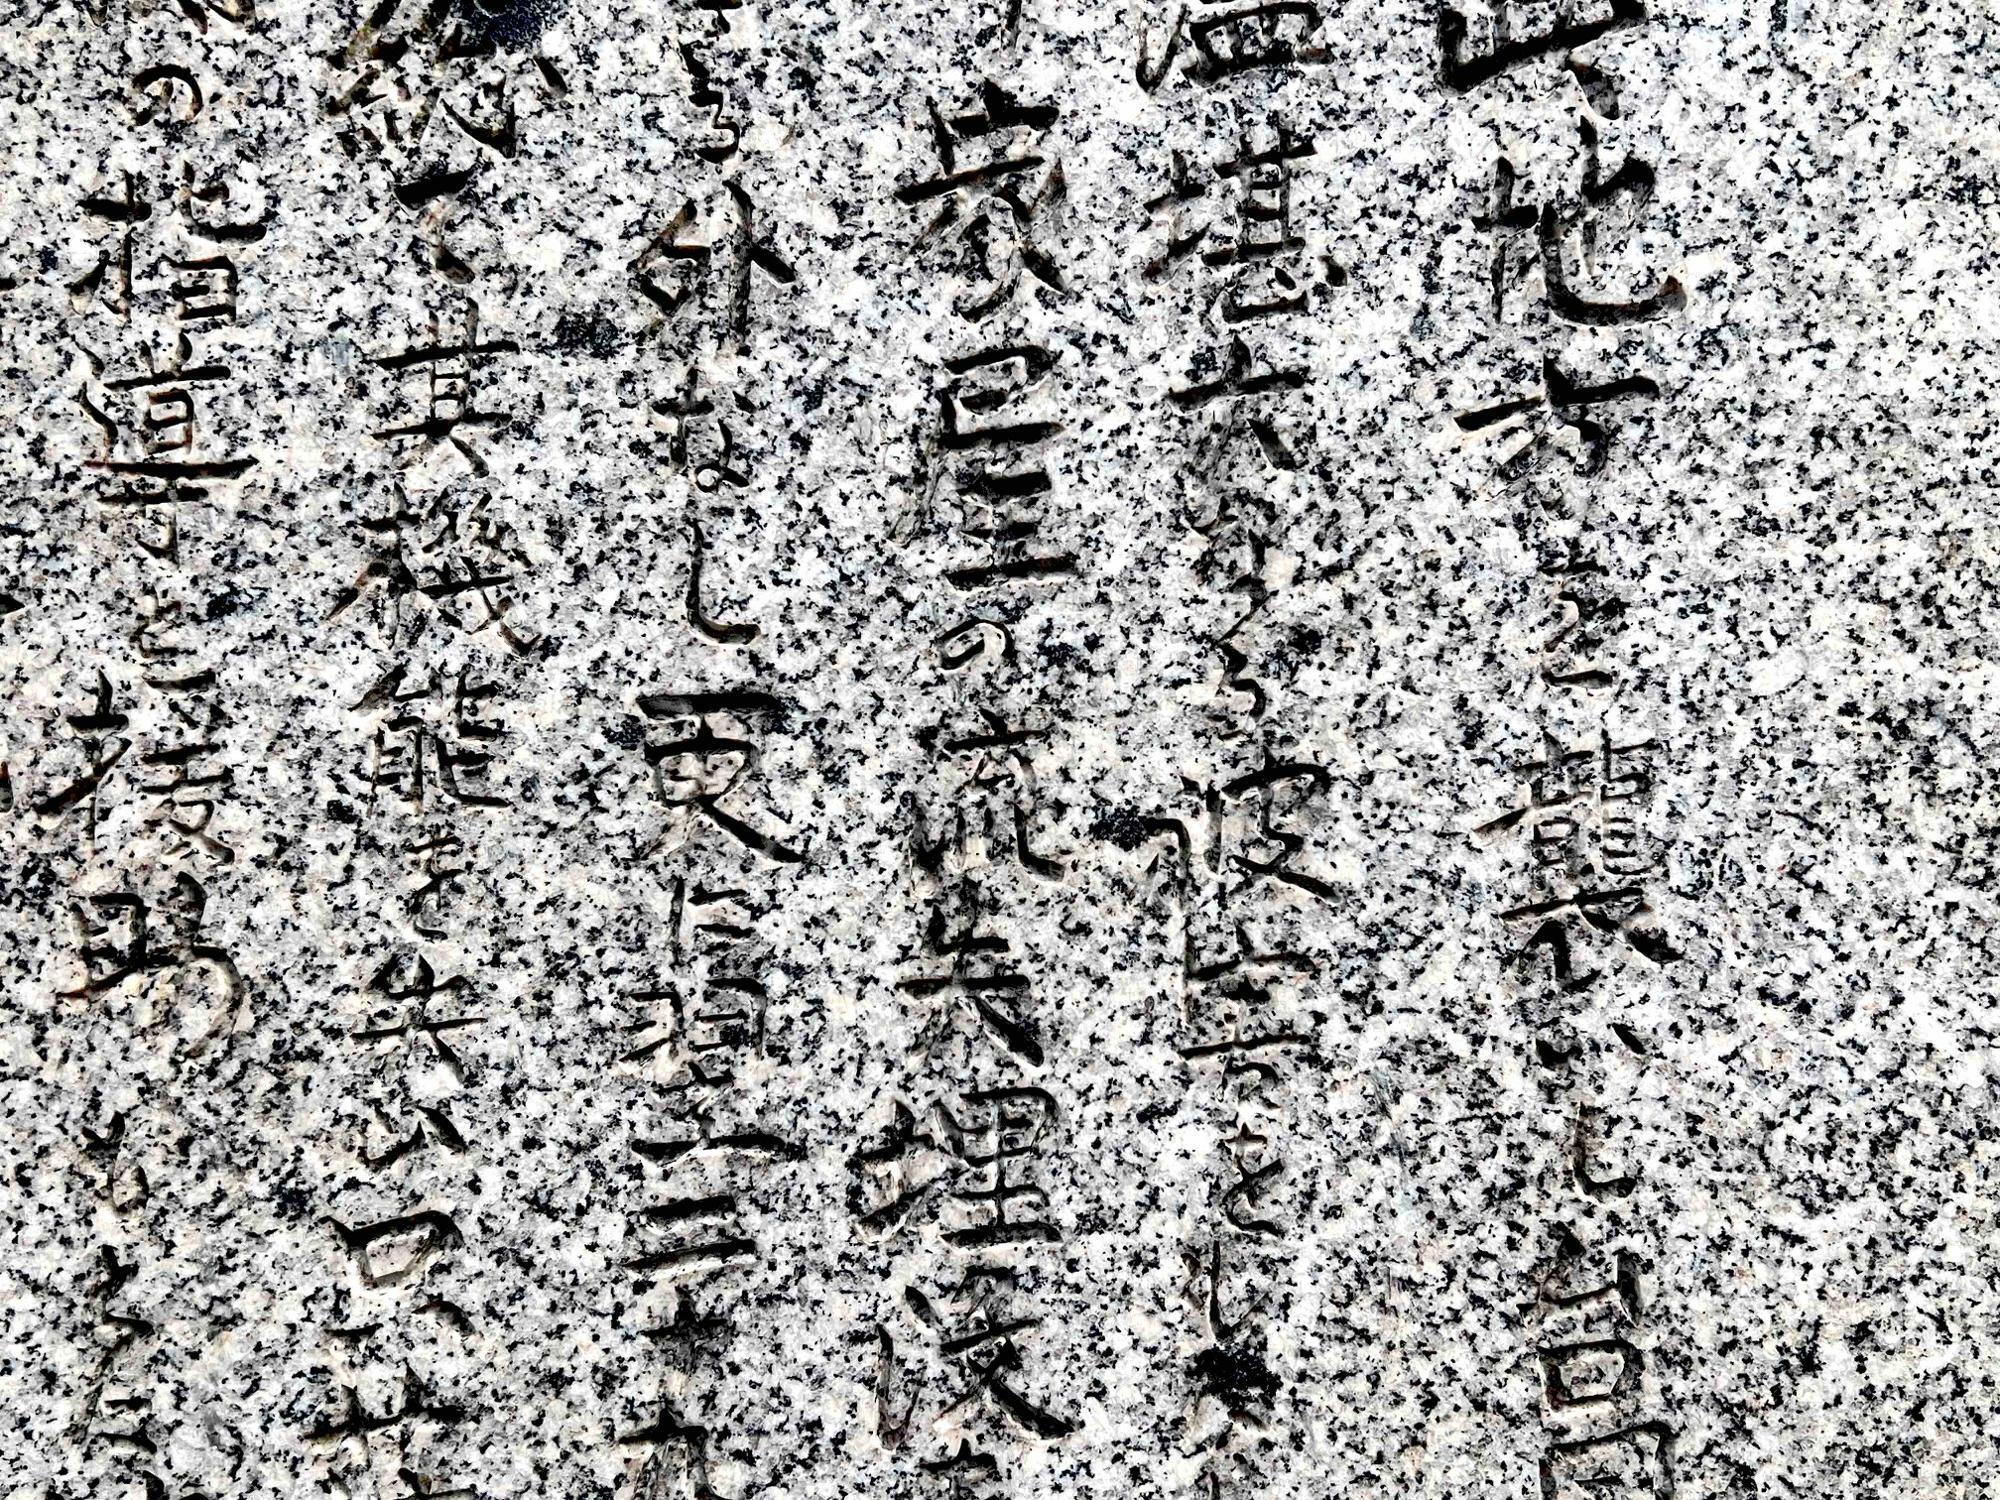 石碑の碑文。写真中央部で「家屋の流出埋没」という文字が読み取れます。